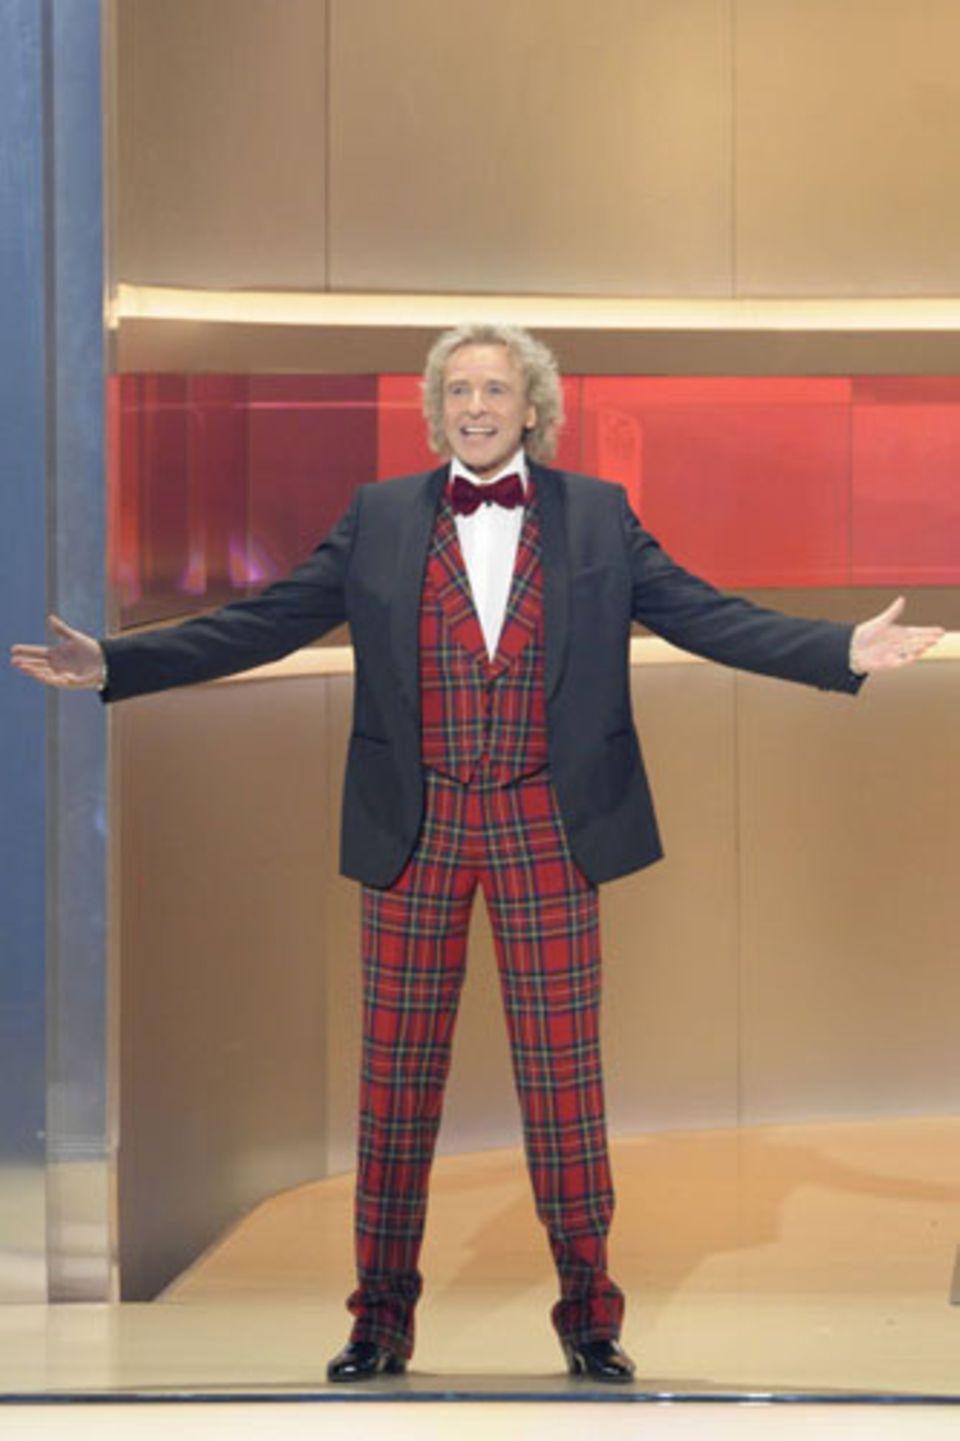 Thomas Gottschalk in einem typischen TV-Outfit. Eine Hommage an die Looks alter Showmaster, die gern in grell bunten, gemusterten Anzügen auftraten (karierte Anzüge waren besonders beliebt).